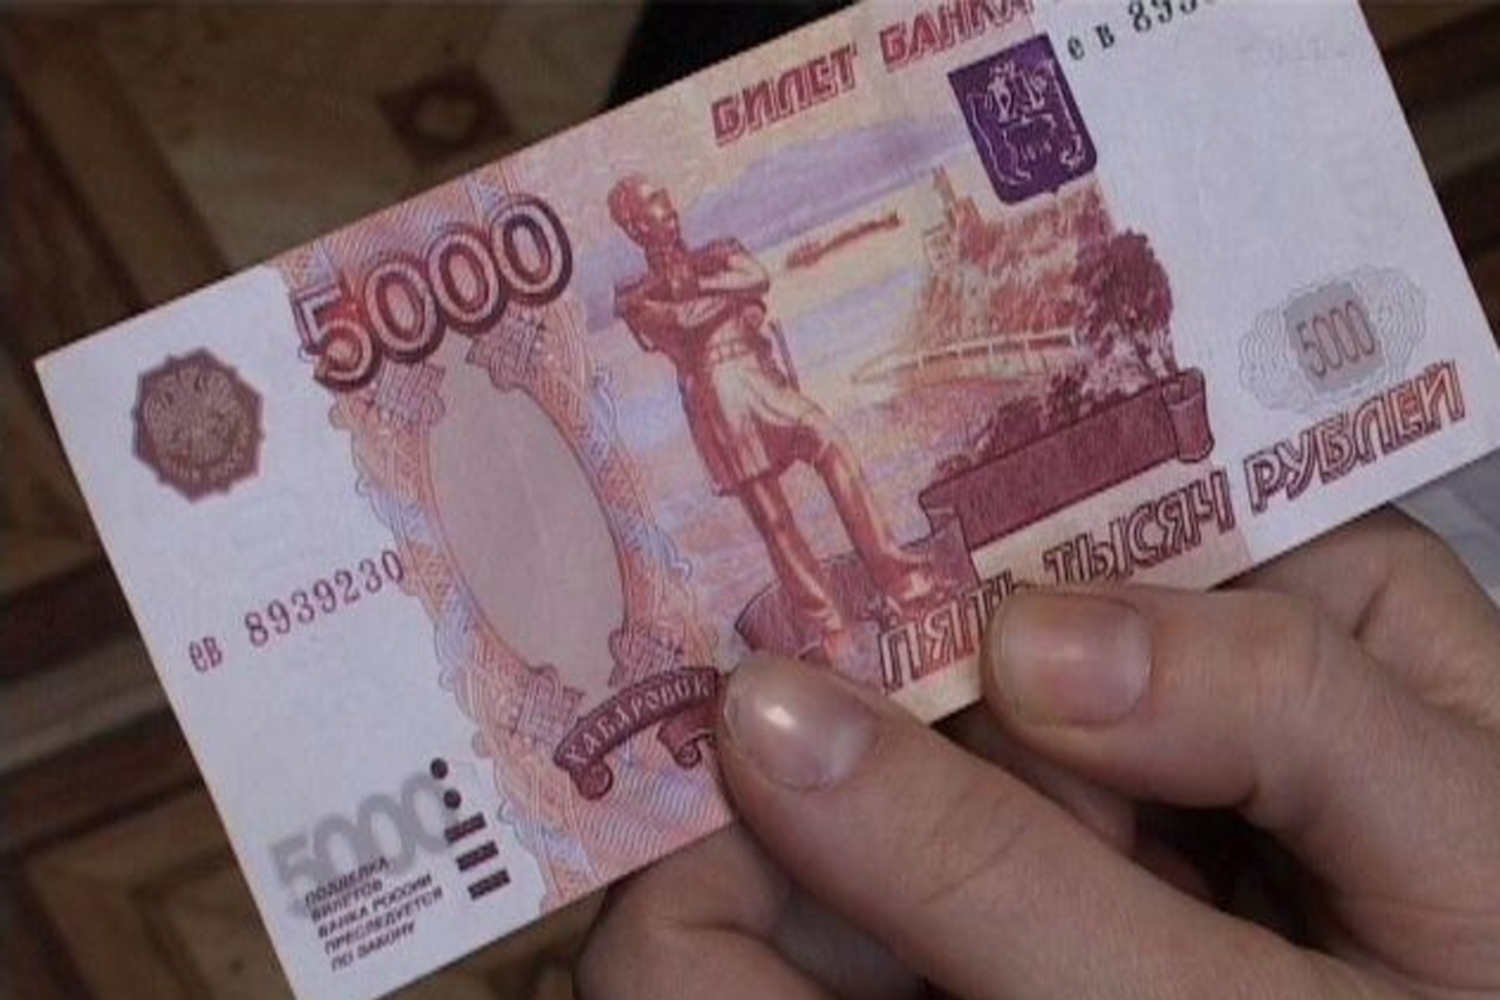 Пять тысяч рублей как путь к уголовному делу